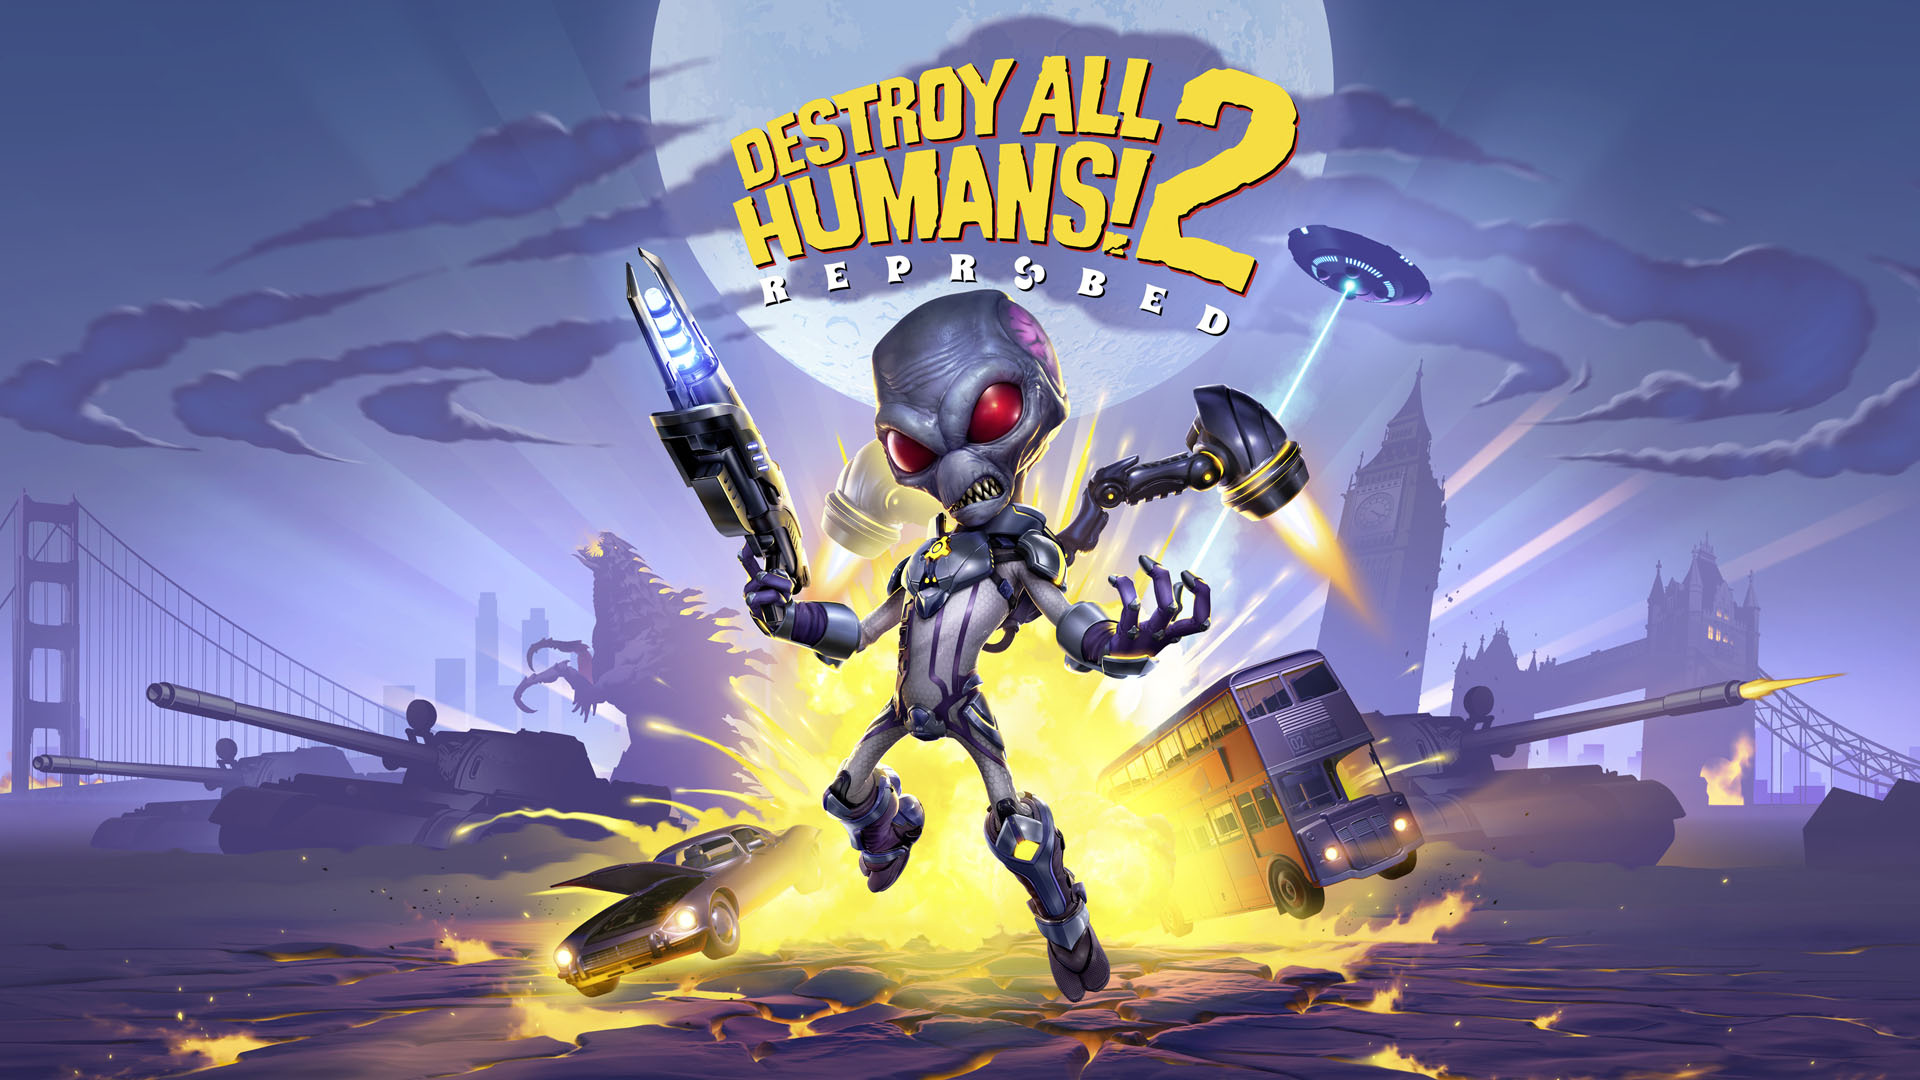 Поиграли в Destroy All Humans! 2 — Reprobed и делимся впечатлениями